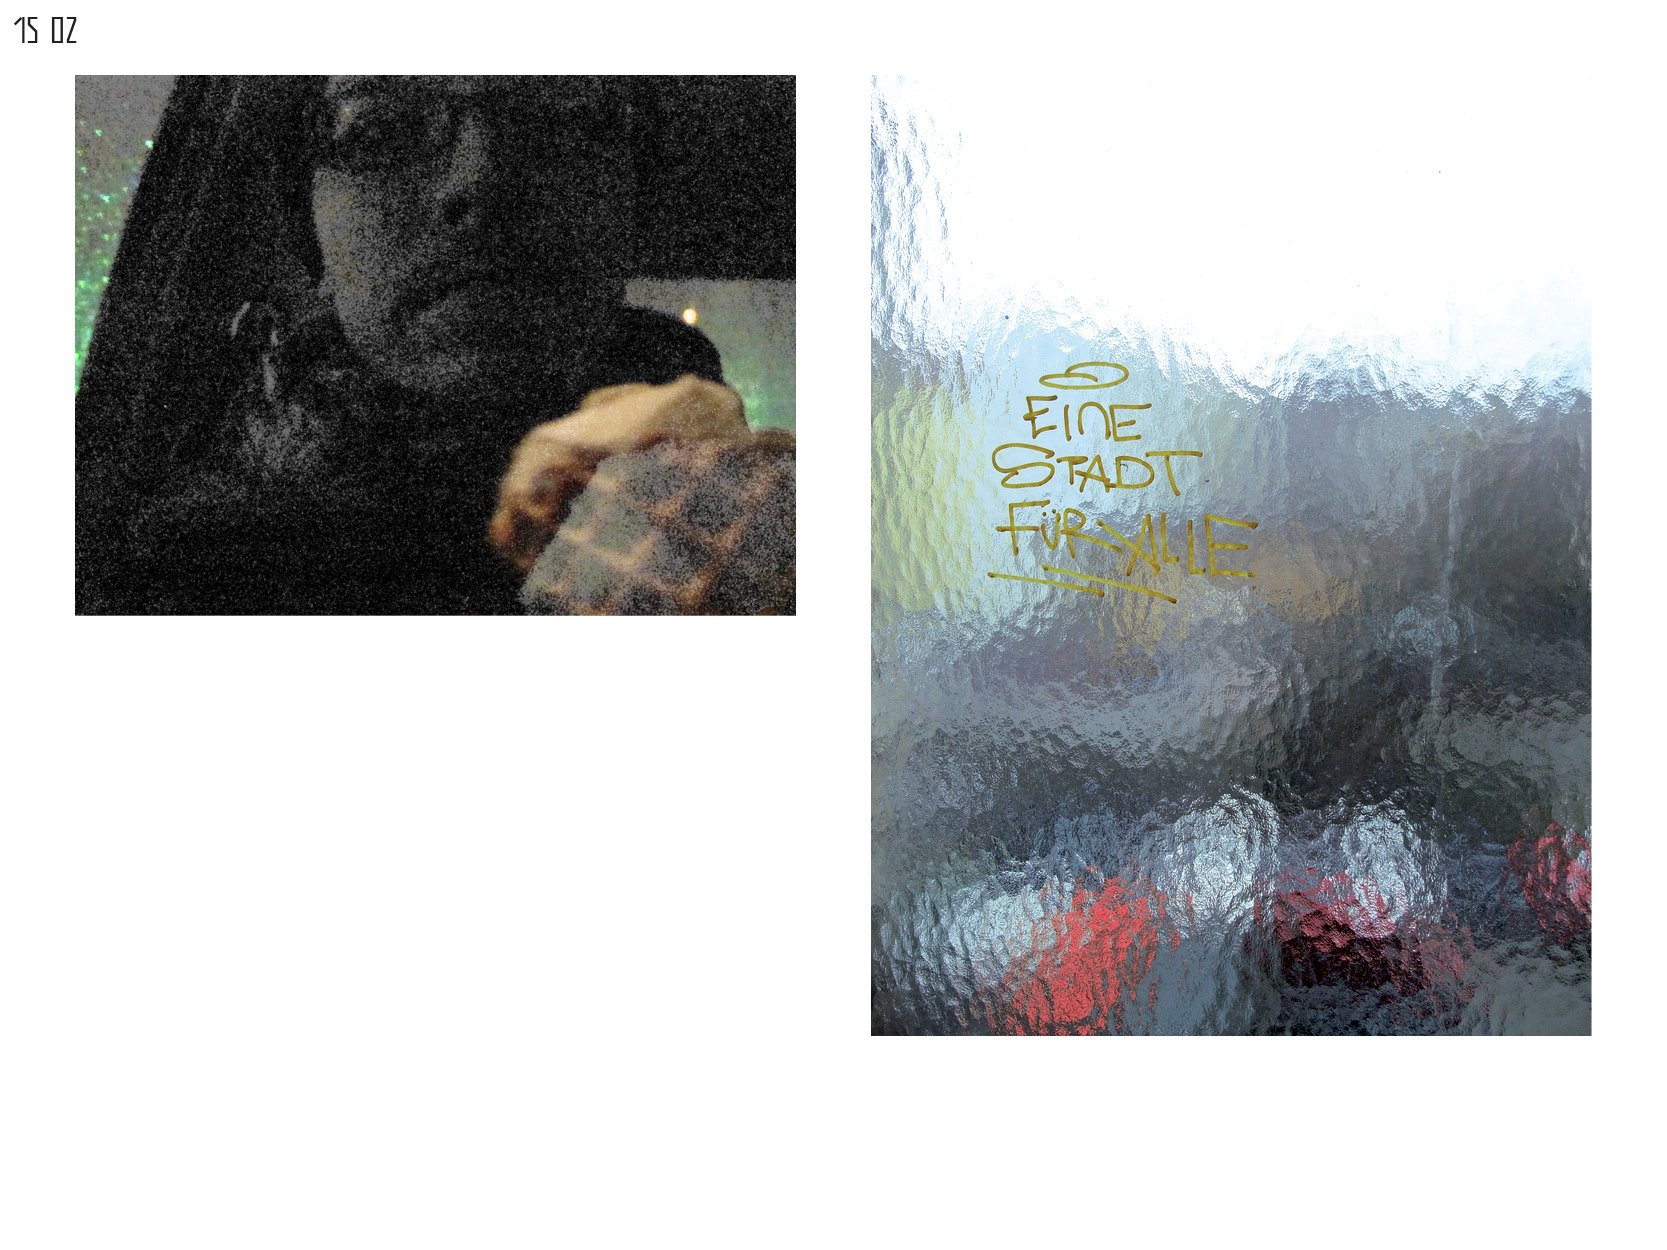 Gerrit-Schweiger-Dialog-Städte-Paris-Berlin-Jessica-Blank-Experiment-Fotoserie-Tagebuch-visuelle-Kommunikation-103